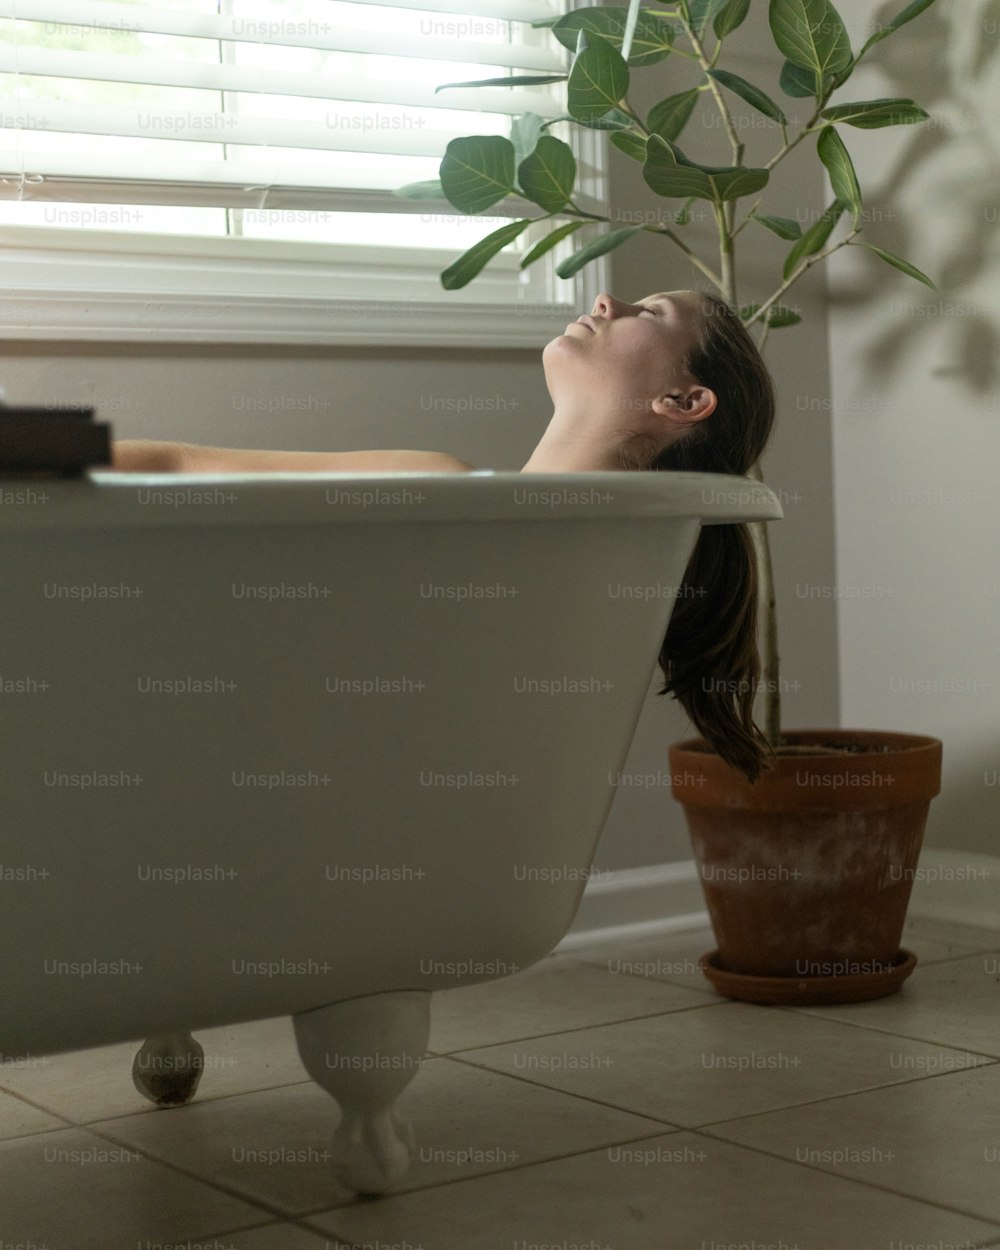 Una mujer acostada en una bañera junto a una planta en maceta